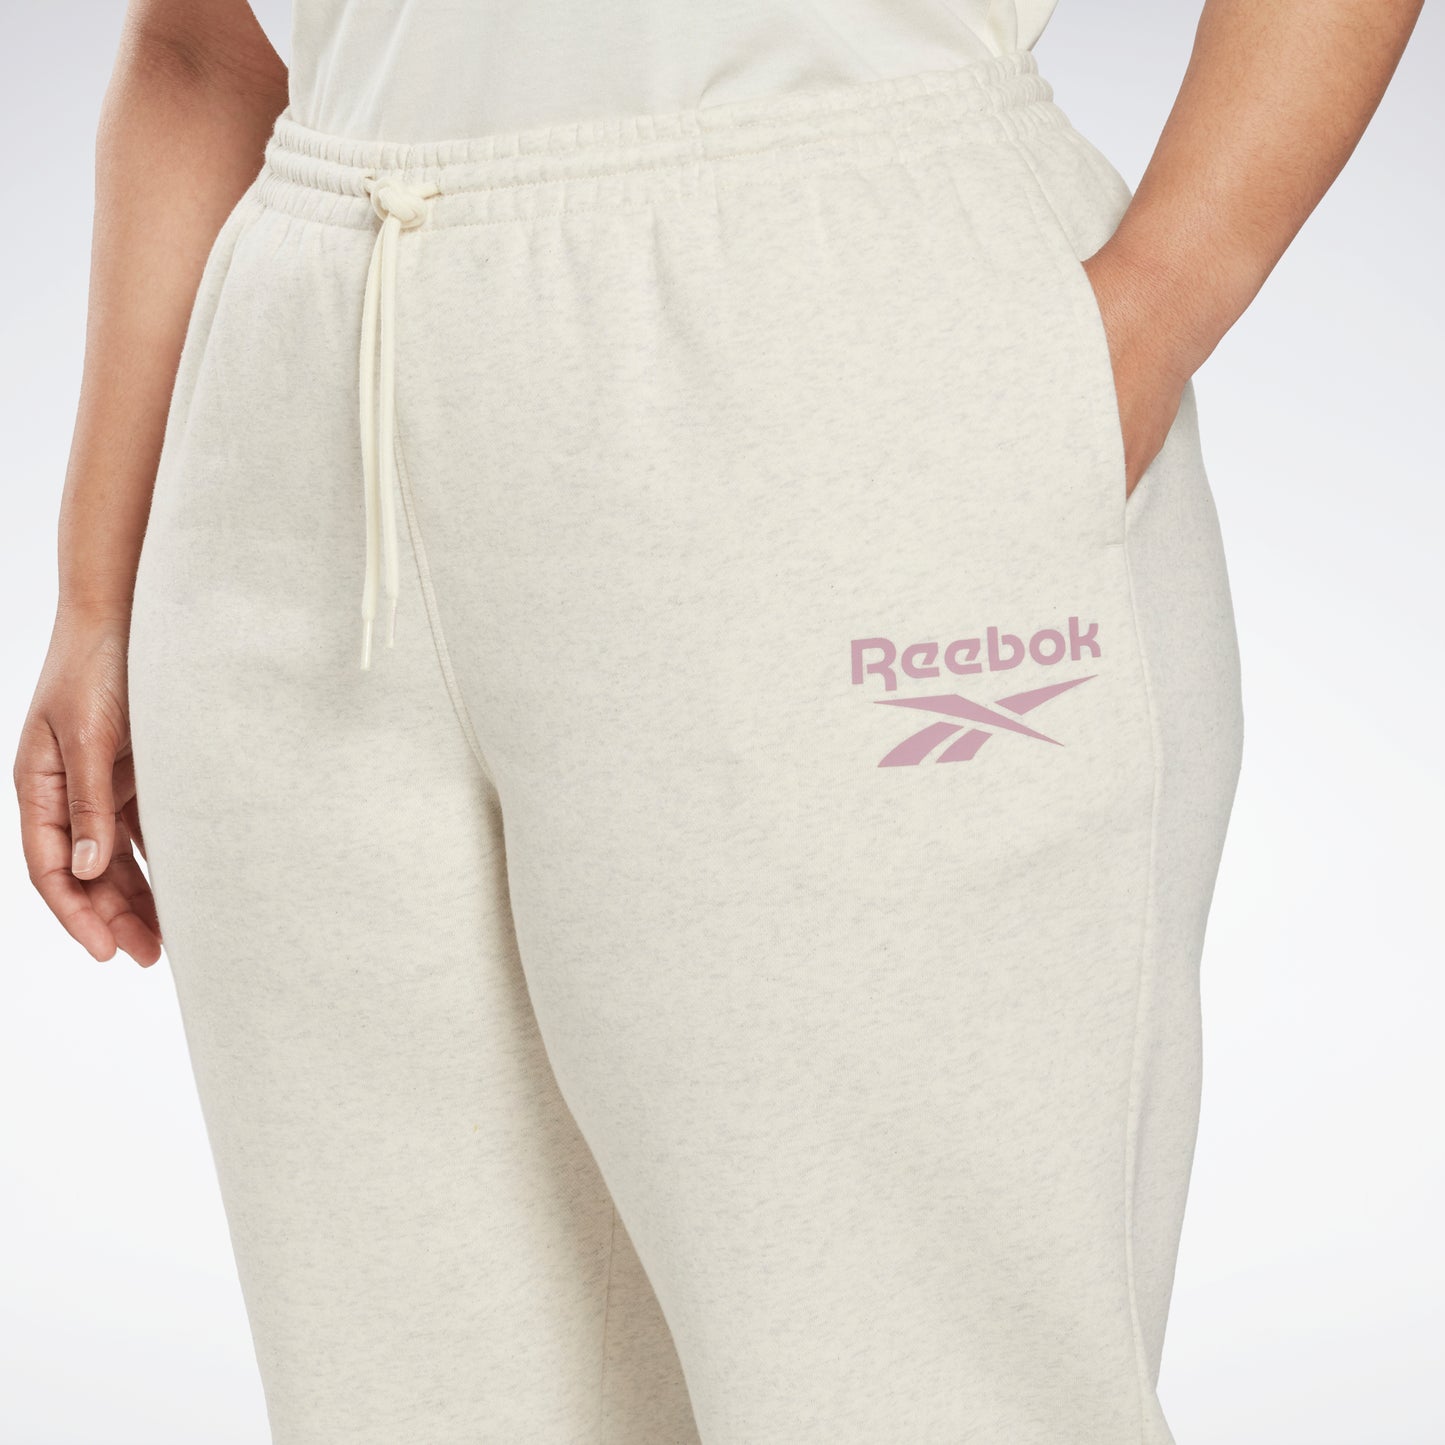 Women's jogging suit Reebok Identity - Women's clothing - Fitness